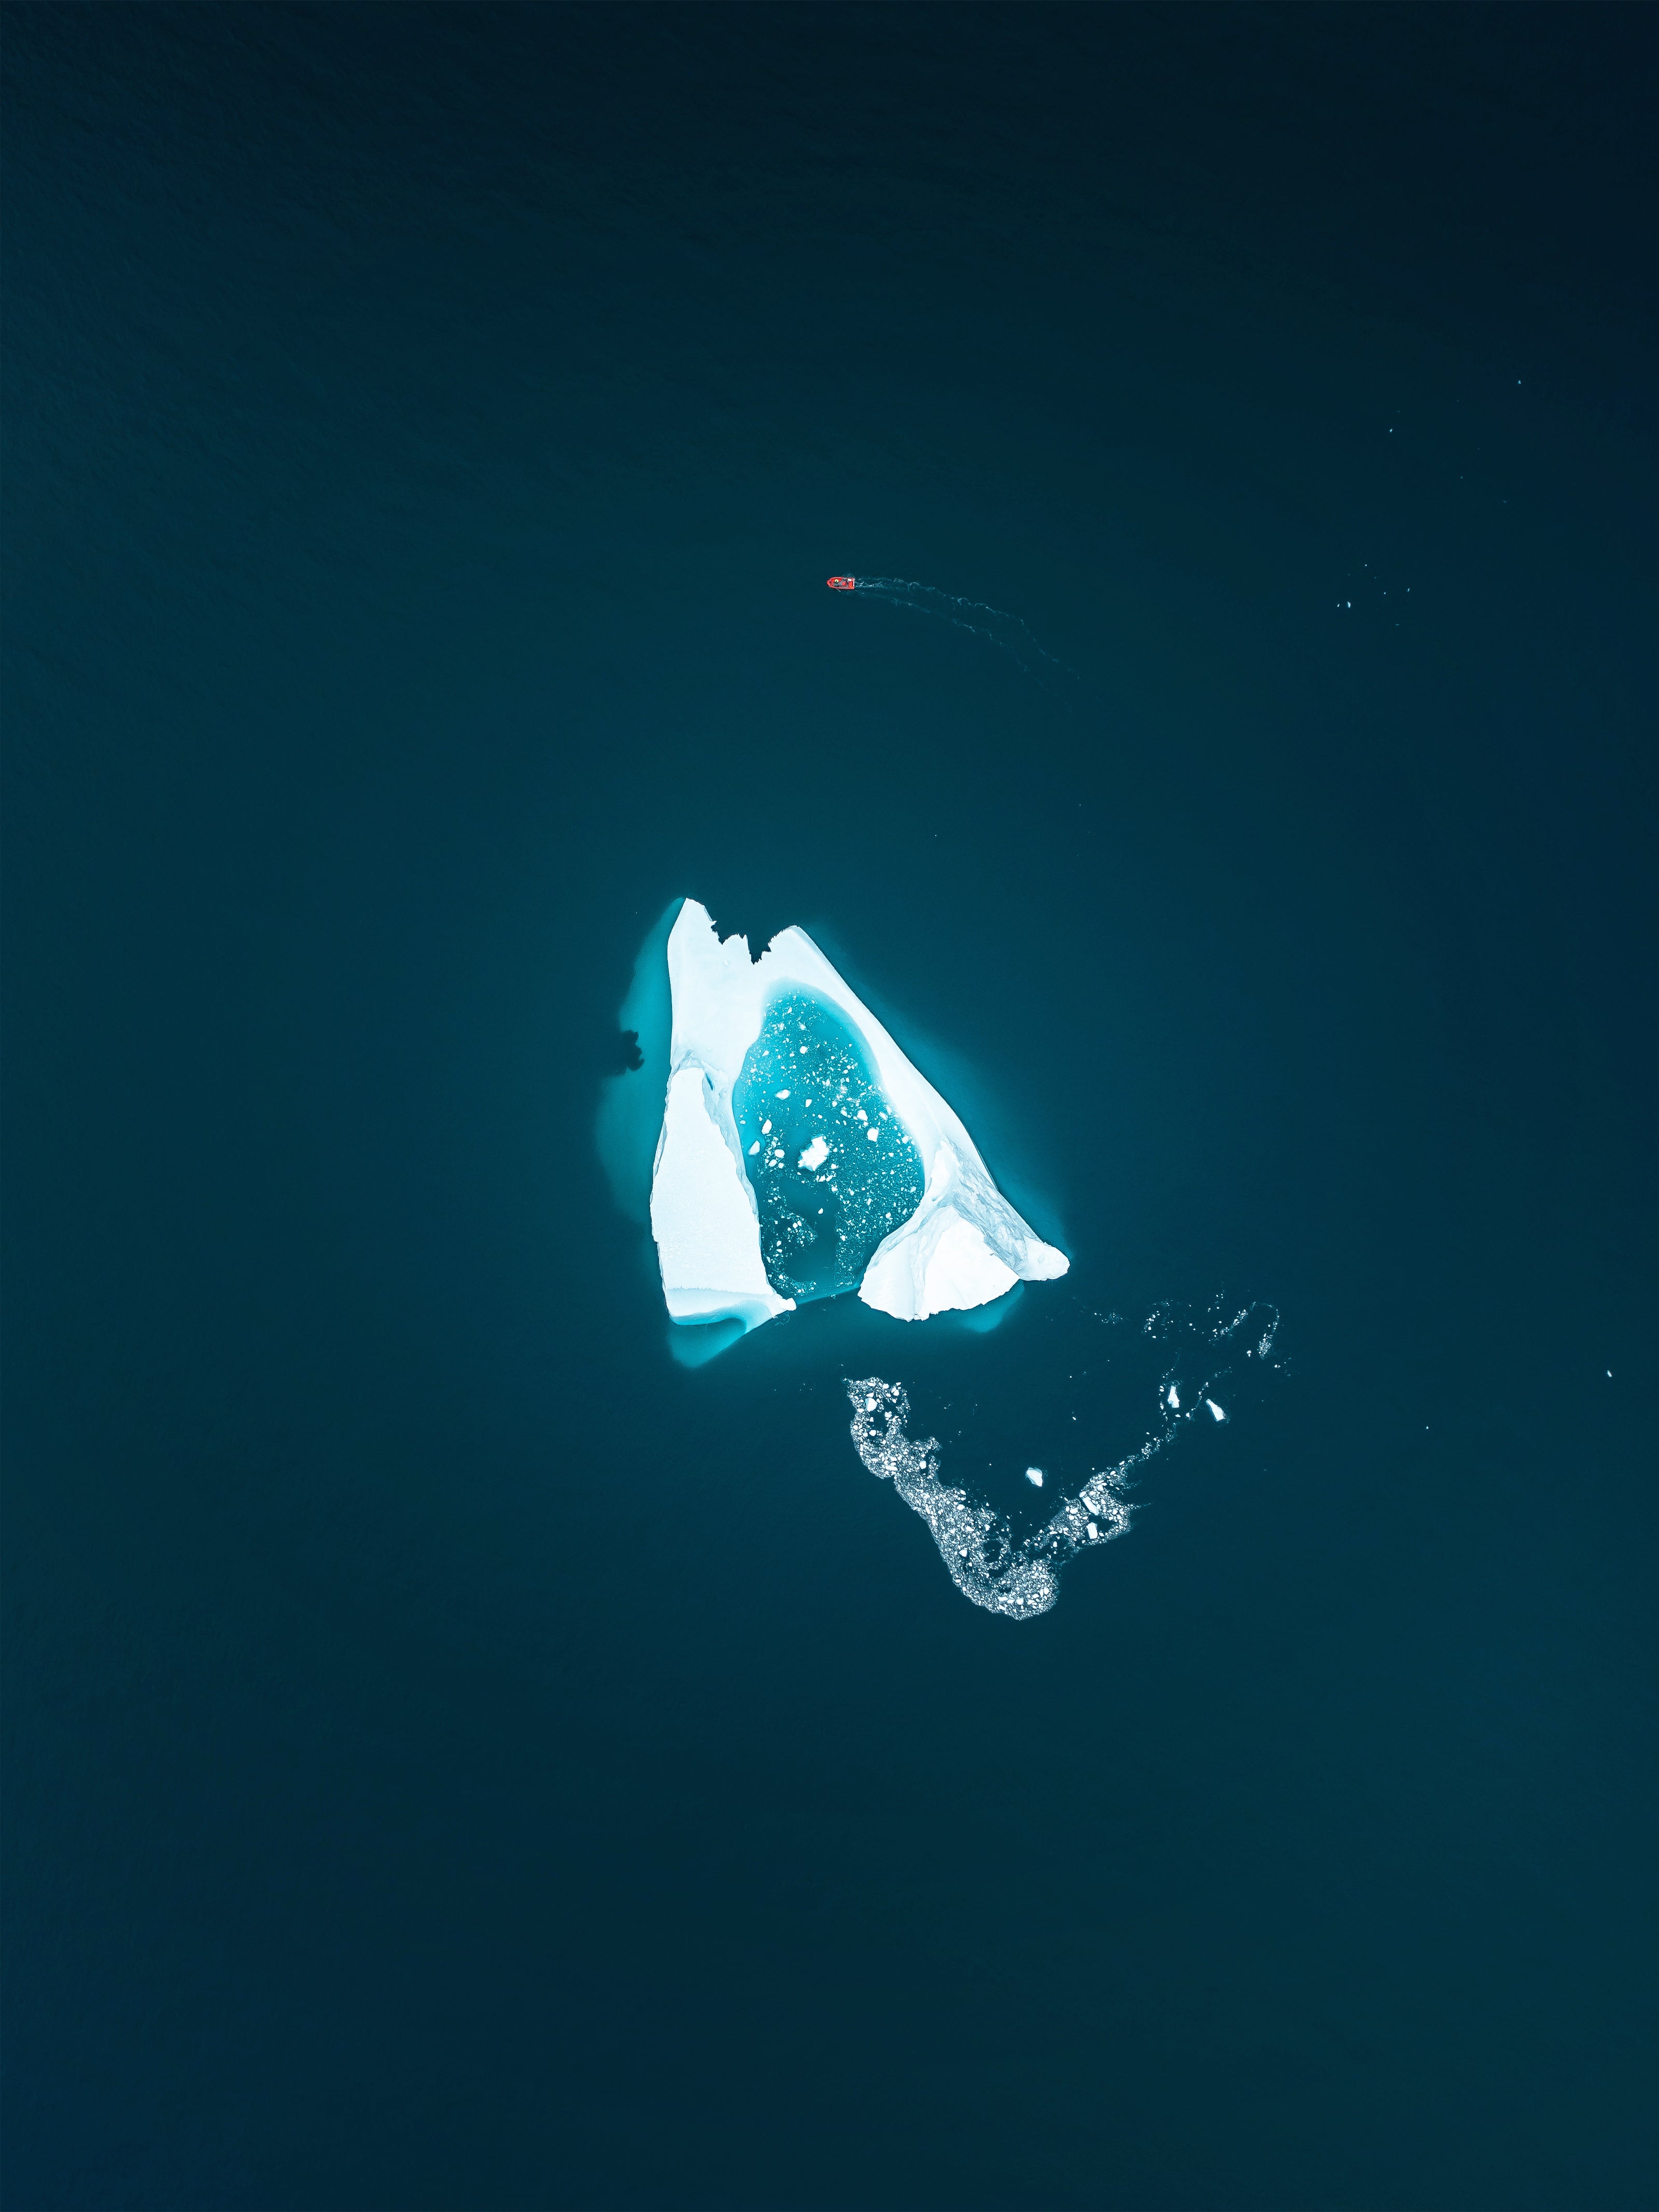 Á meðal ísjaka I / Among Icebergs I